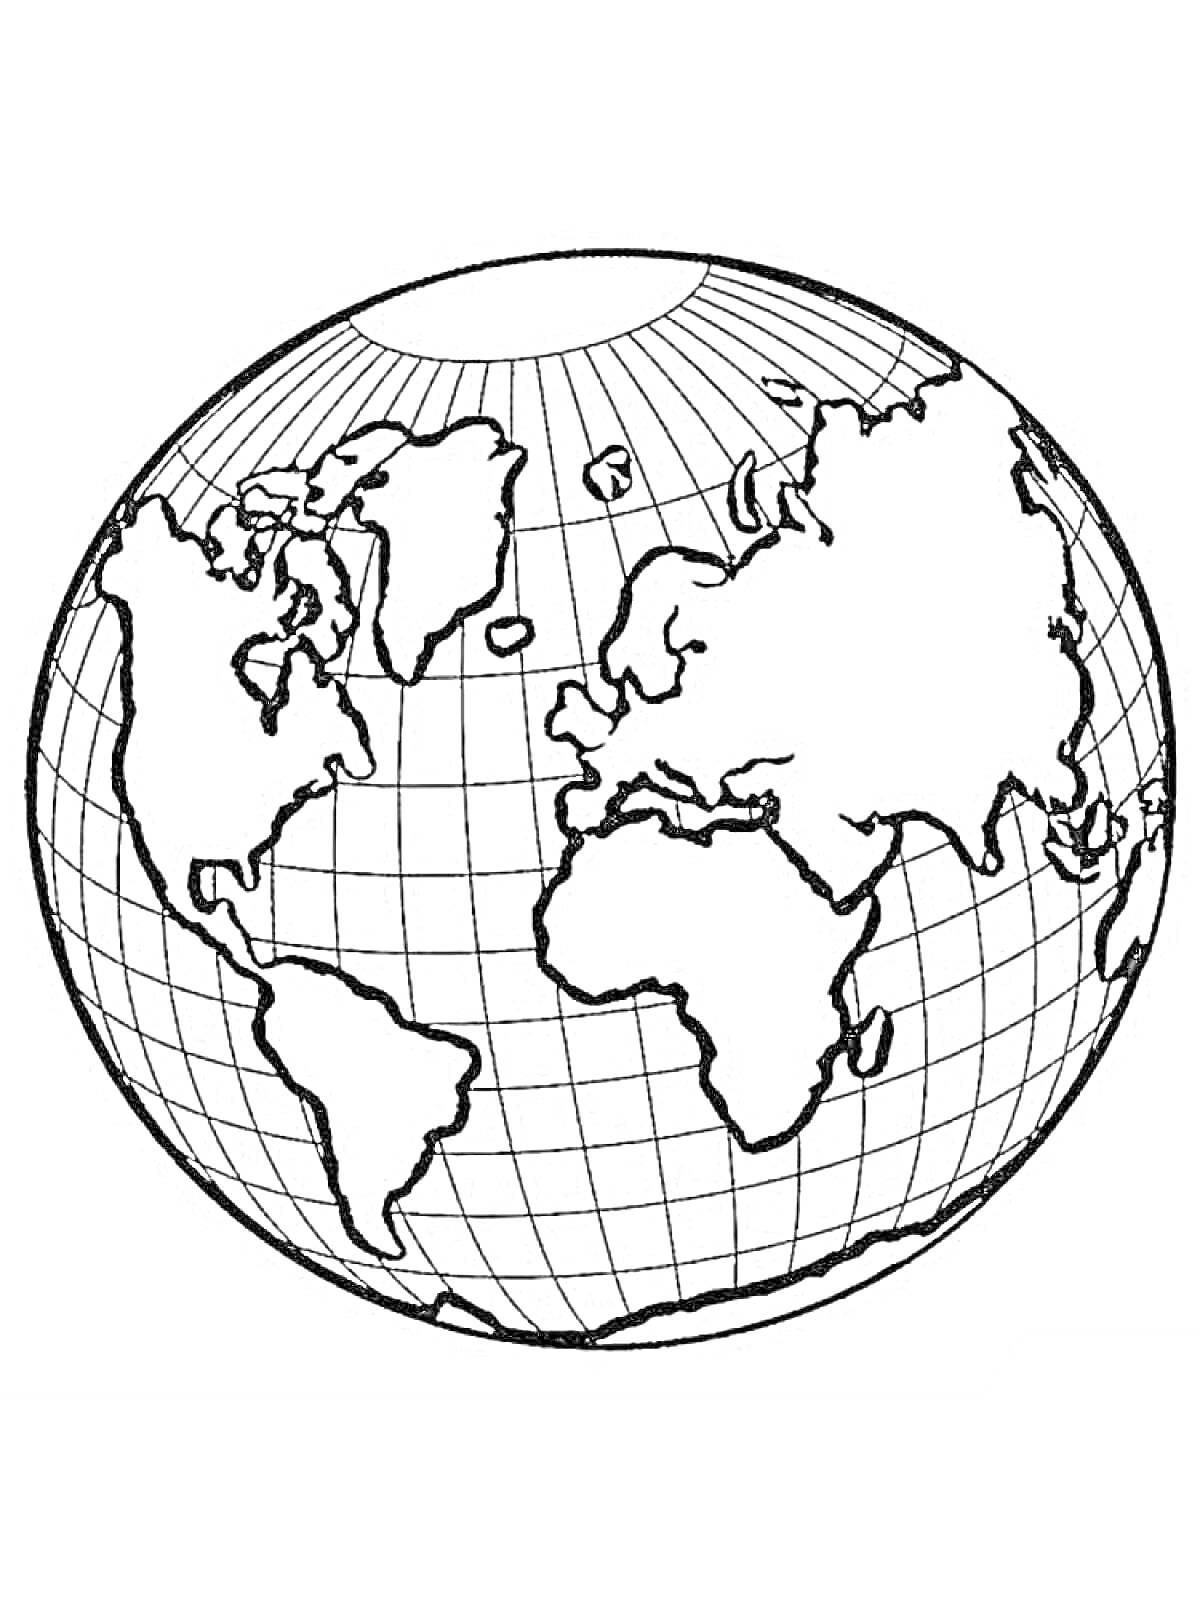 Раскраска Глобус с отображением континентов на фоне сетки координат